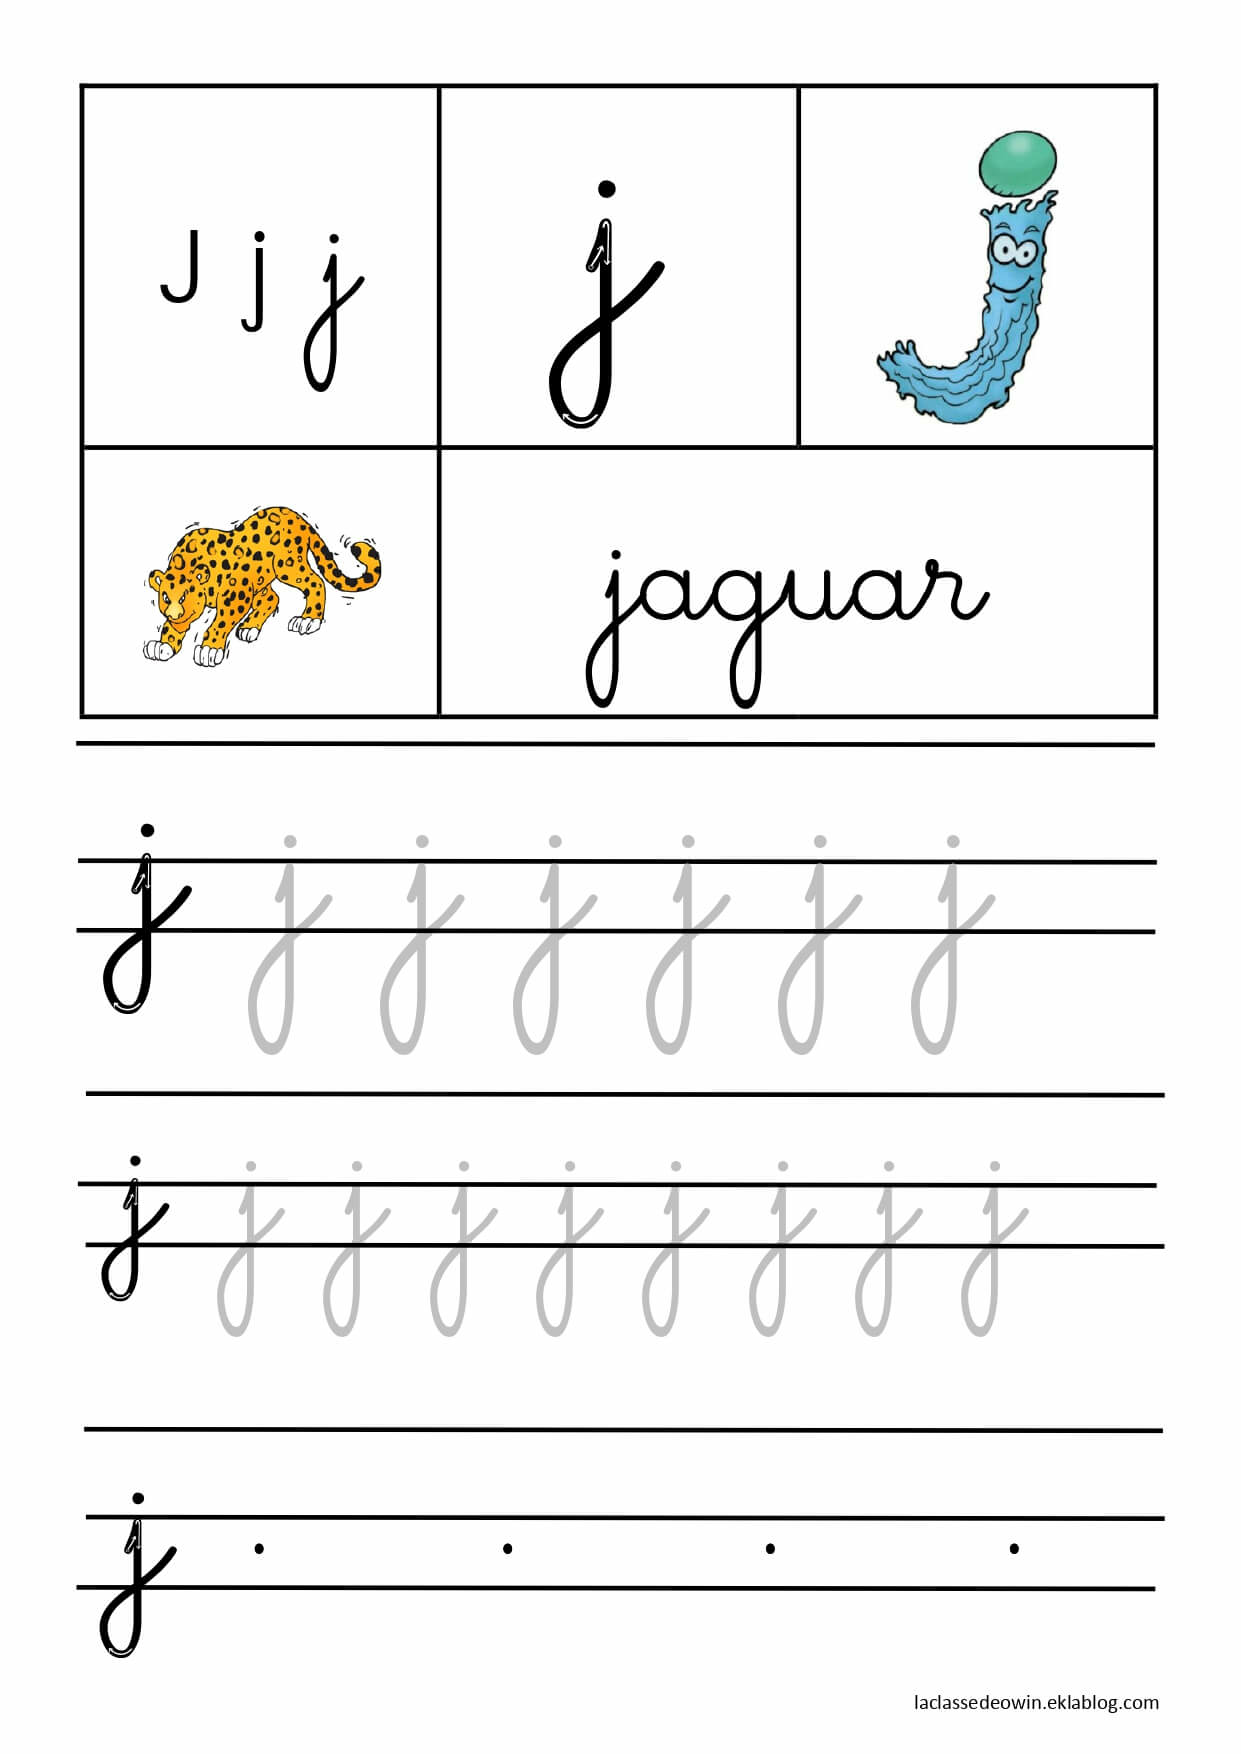   Lettre J pour jaguar, écriture cursive GS 